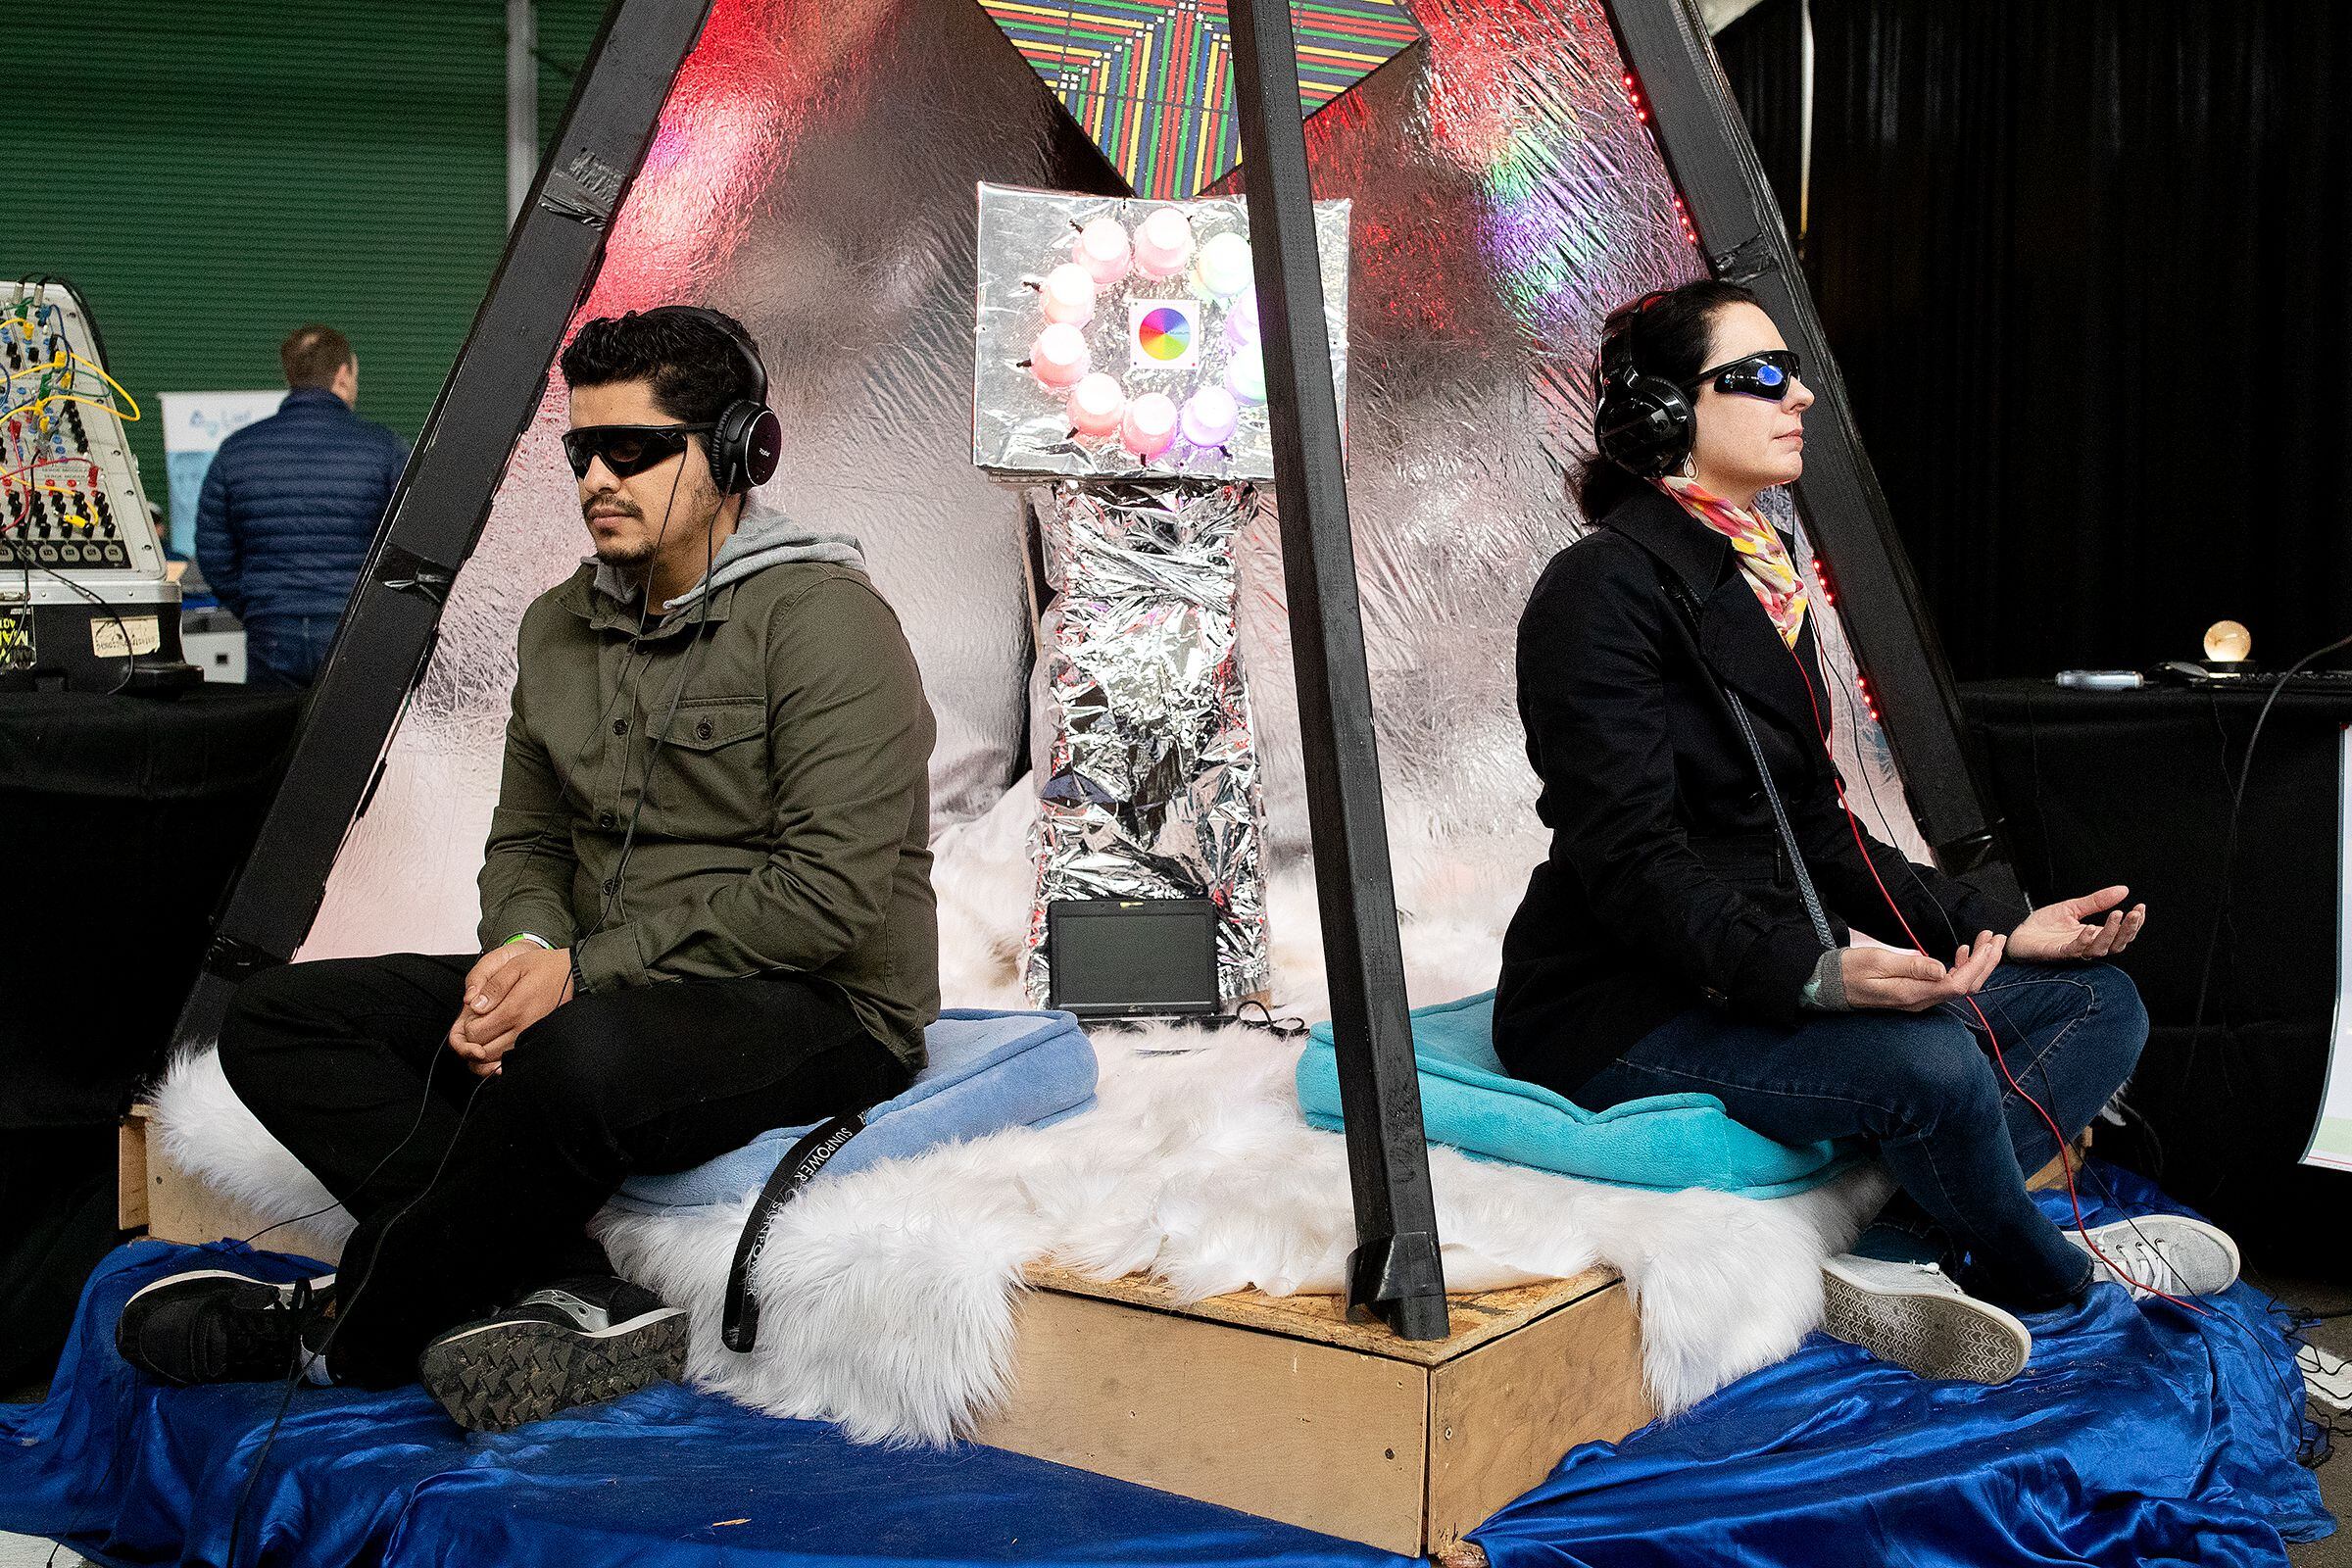 Los visitantes del Worlds Fair Nano prueban la pirámide AZoth, una máquina interactiva de inducción cerebral, durante el evento. Worlds Fair Nano es un festival del futuro cuya misión es que el público en general experimente el mañana. San Francisco, California, 11 de marzo, 2018.